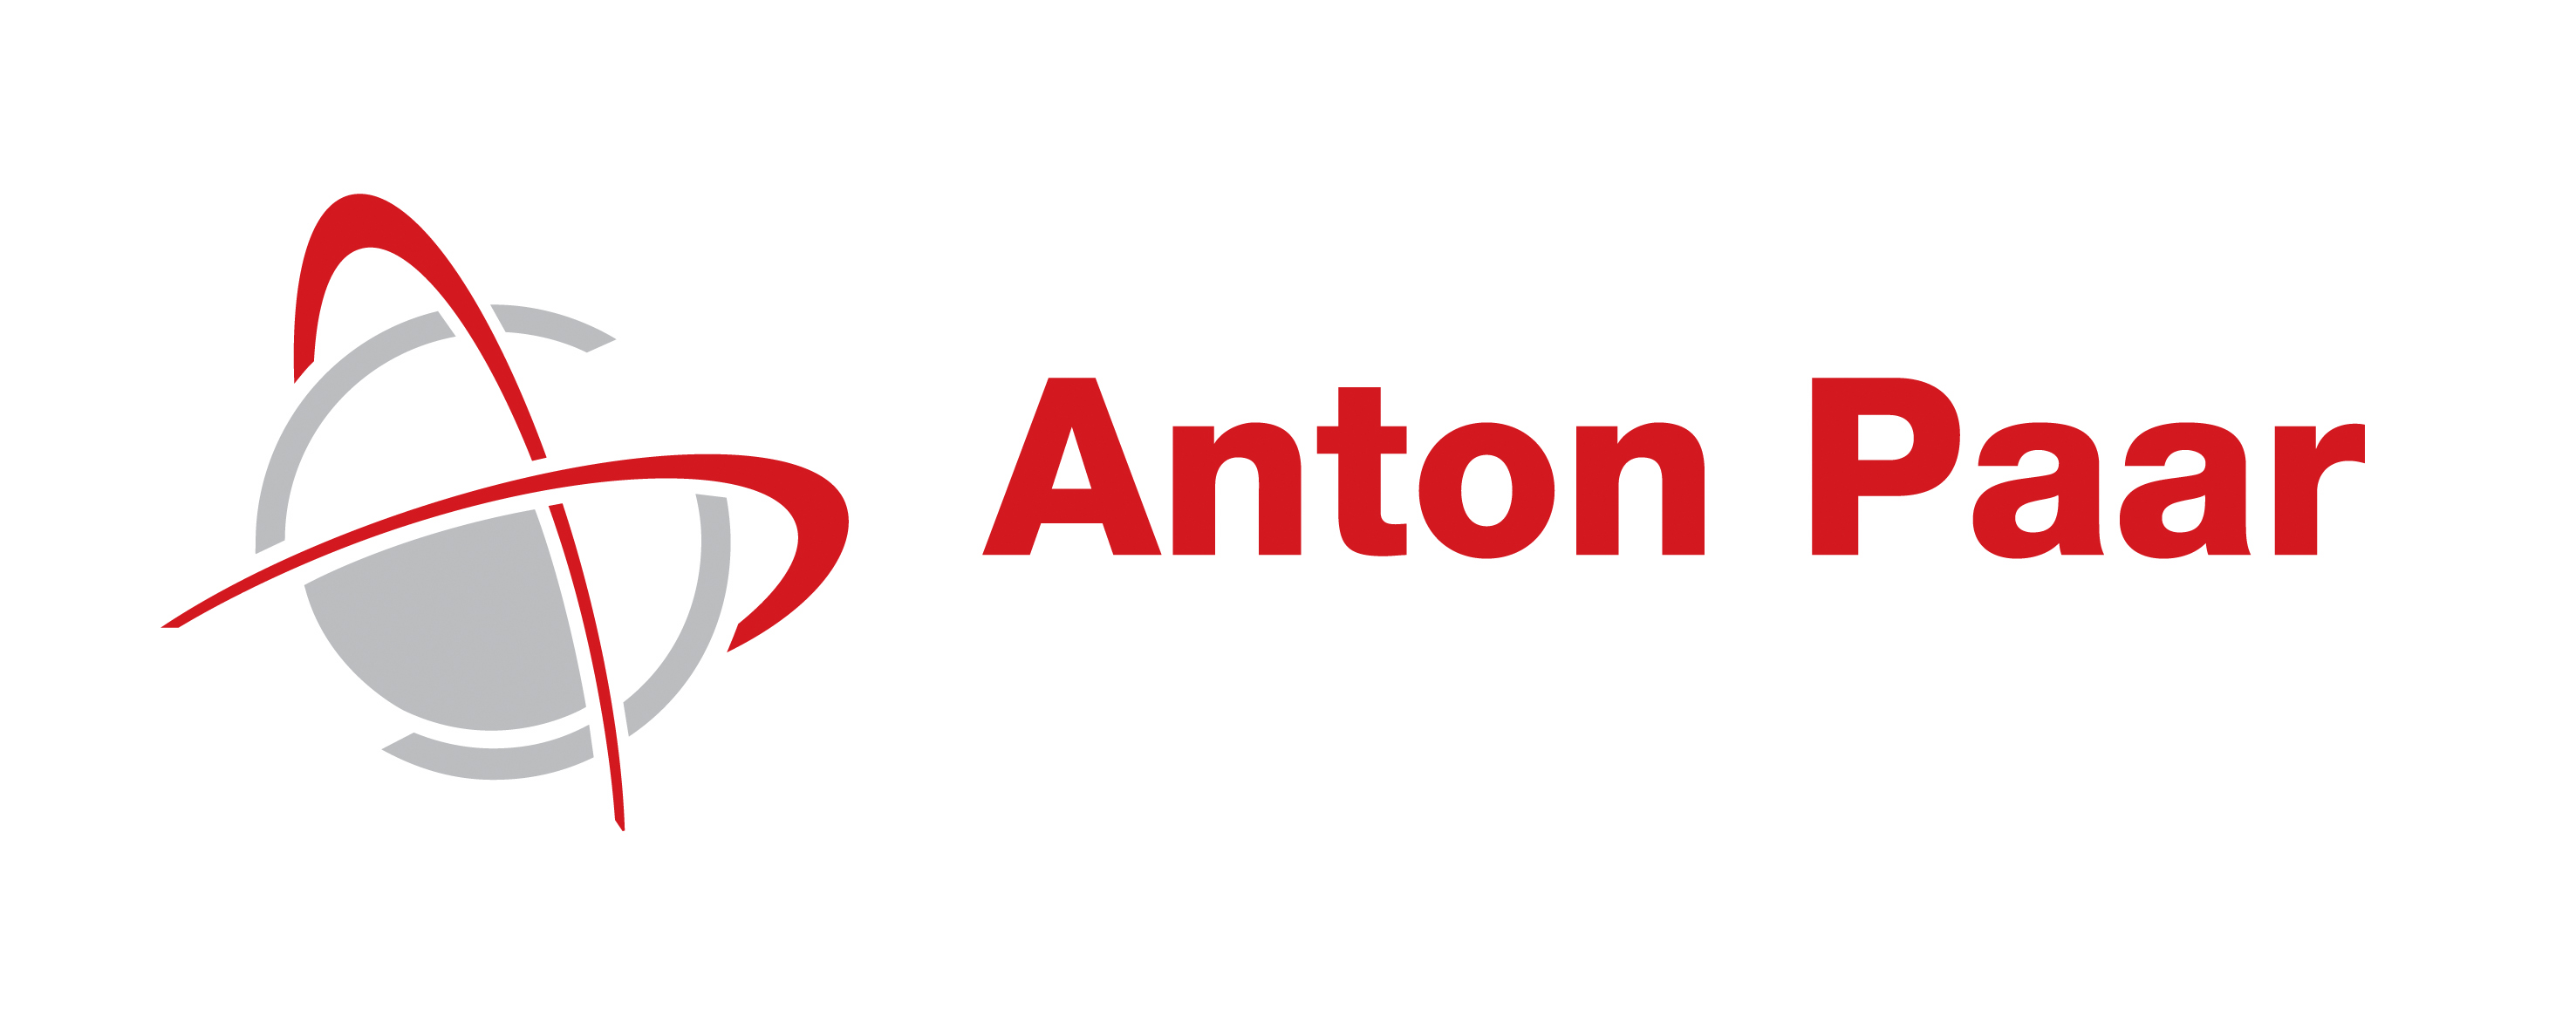 AntonPaar_logo_2.jpg